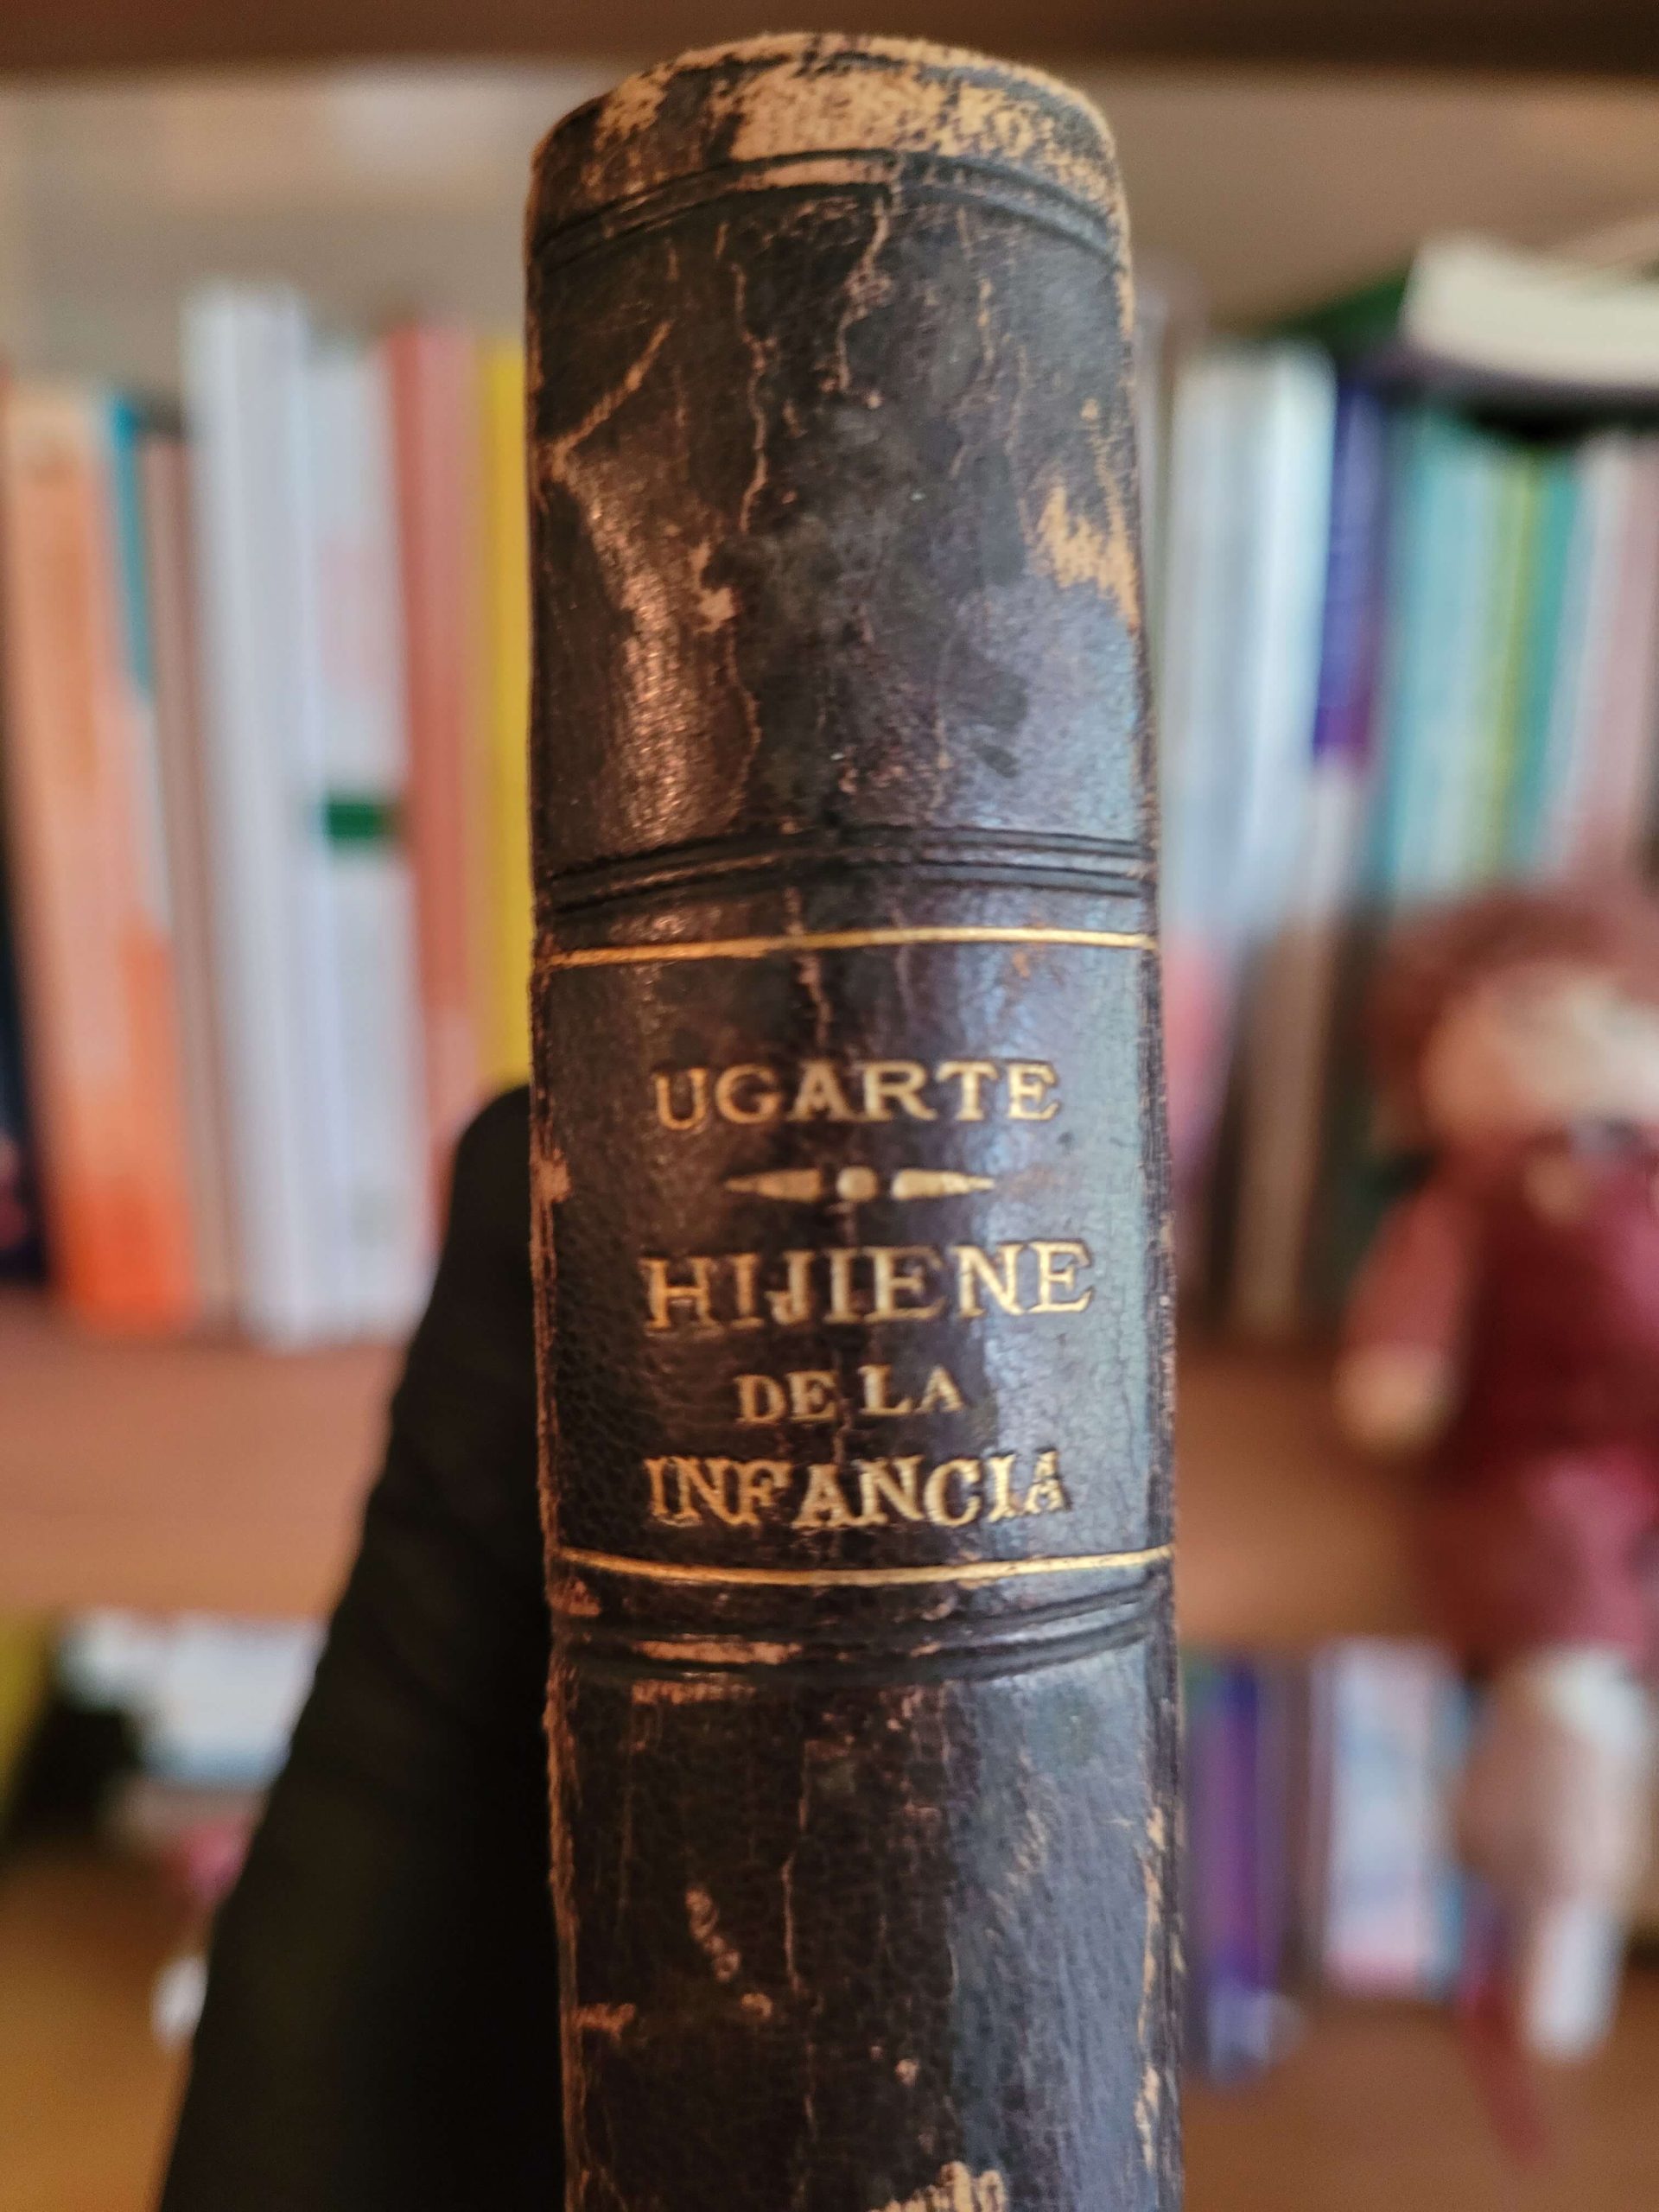 Hijiene de la infancia (1887) (Dr. Jacinto Ugarte)